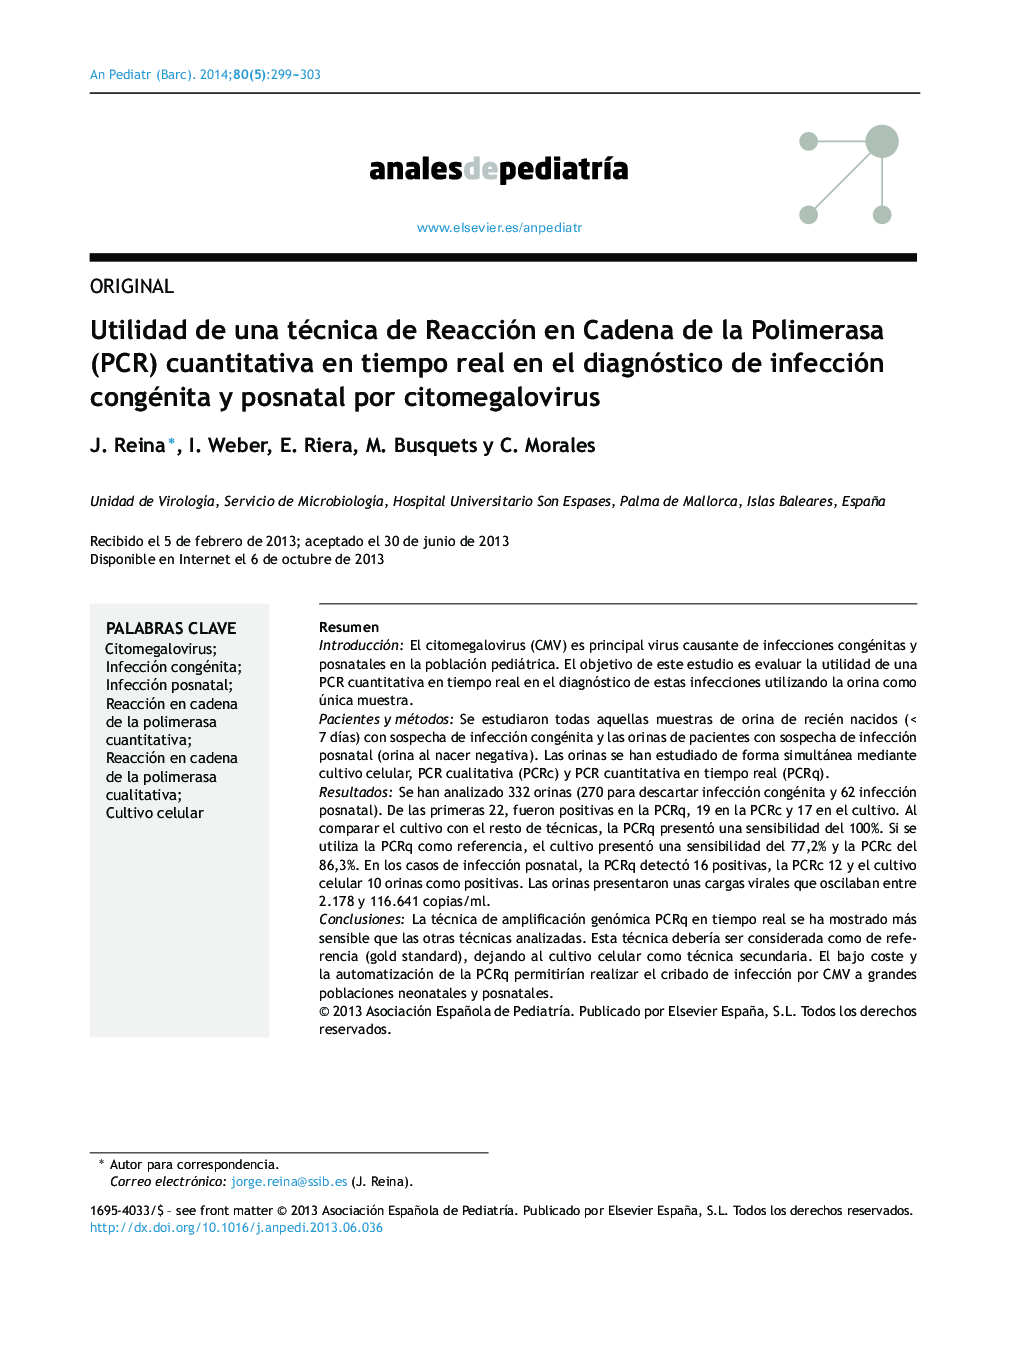 Utilidad de una técnica de Reacción en Cadena de la Polimerasa (PCR) cuantitativa en tiempo real en el diagnóstico de infección congénita y posnatal por citomegalovirus